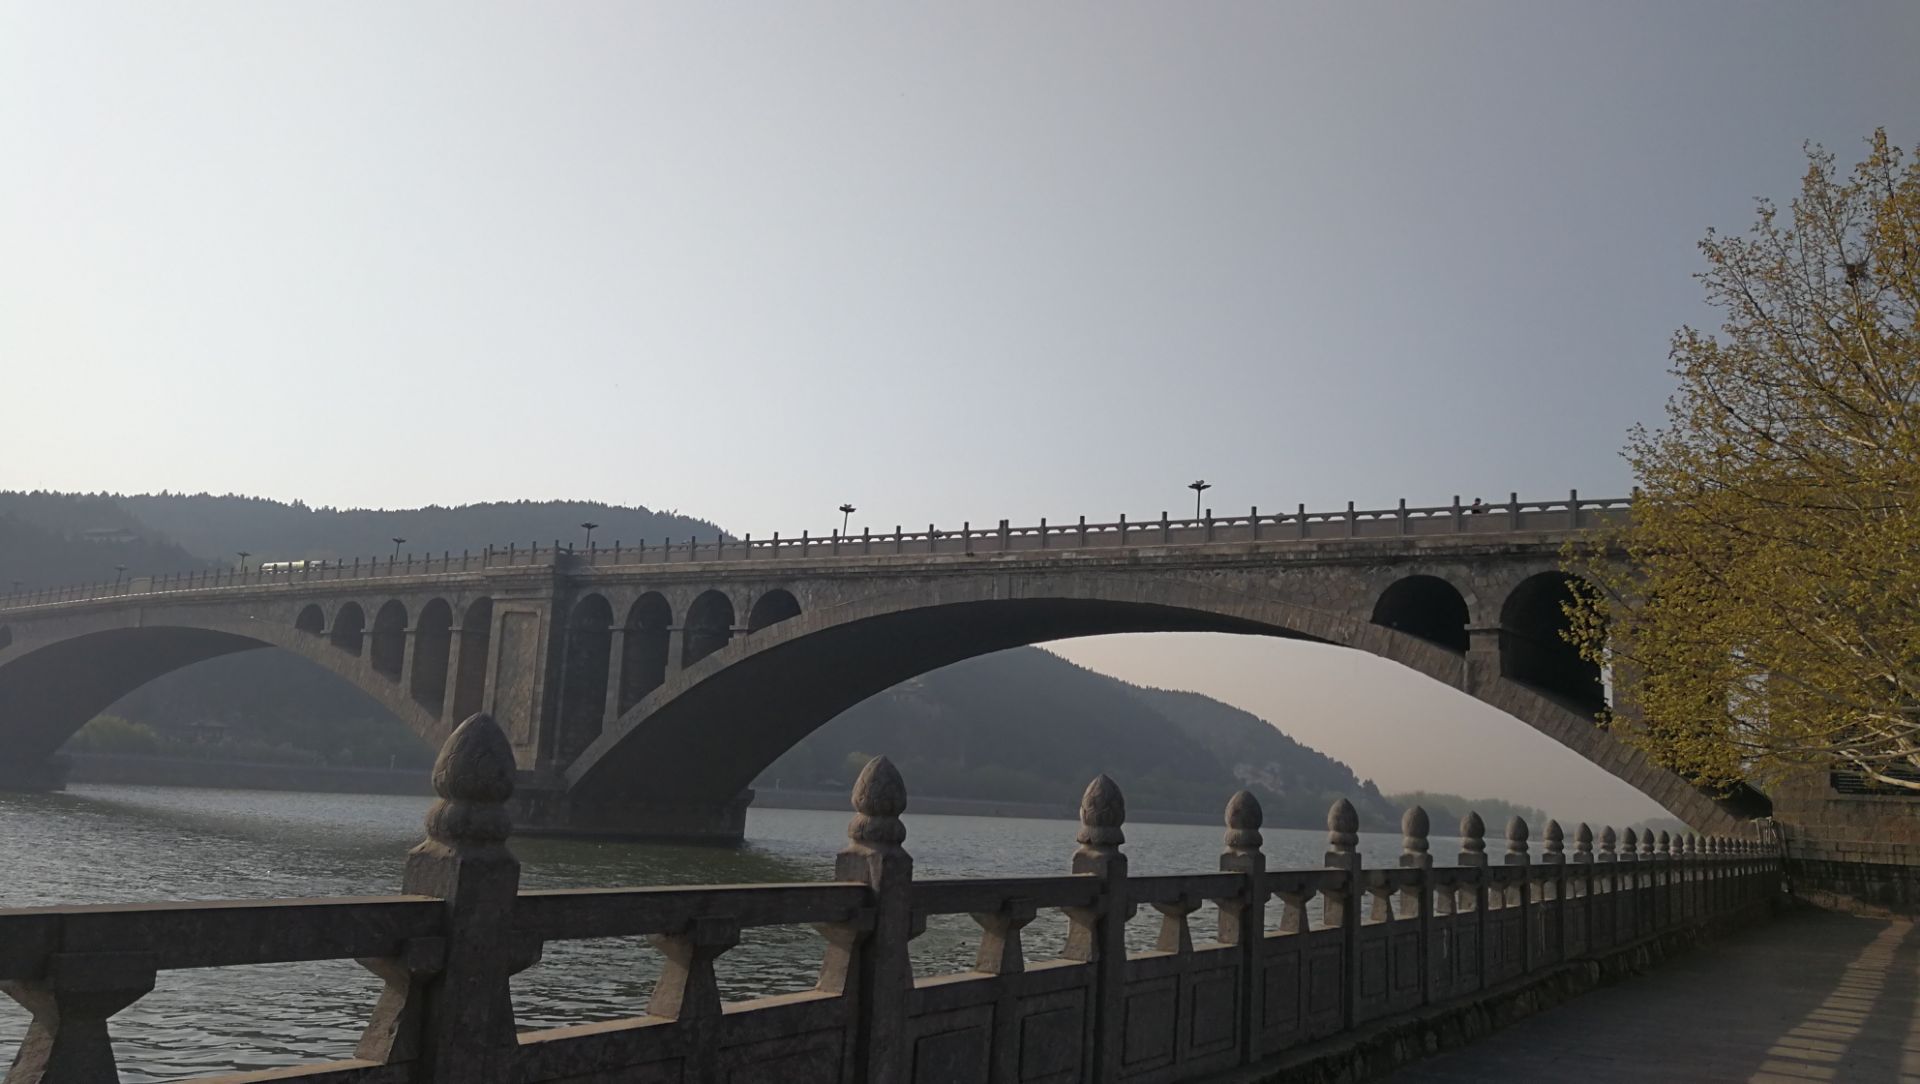 创新施工工艺 广西第一跨海大桥龙门大桥首孔移动模架现浇箱梁完成浇筑-中国科技网